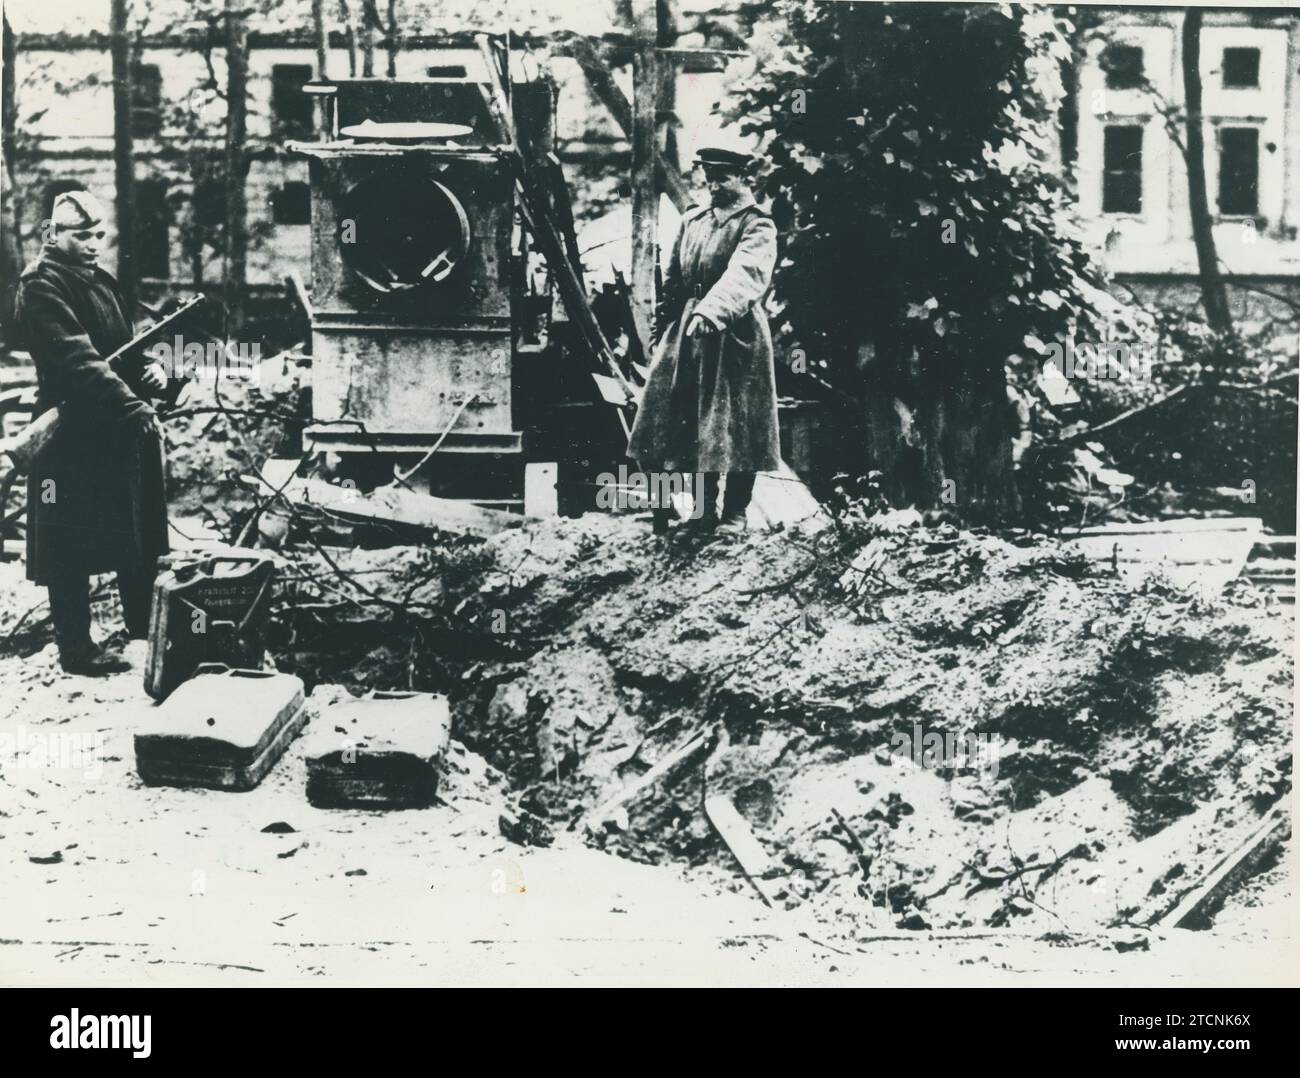 Berlín (Alemania), 29/04/1945. Soldados soviéticos posan frente a la pila de tierra donde Adolf Hitler se suicidó con Eva Braun, en la entrada del búnker. Crédito: Álbum / Archivo ABC Foto de stock